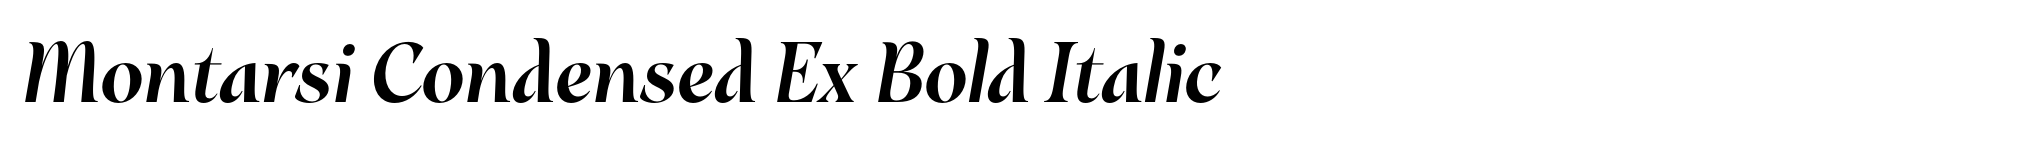 Montarsi Condensed Ex Bold Italic image